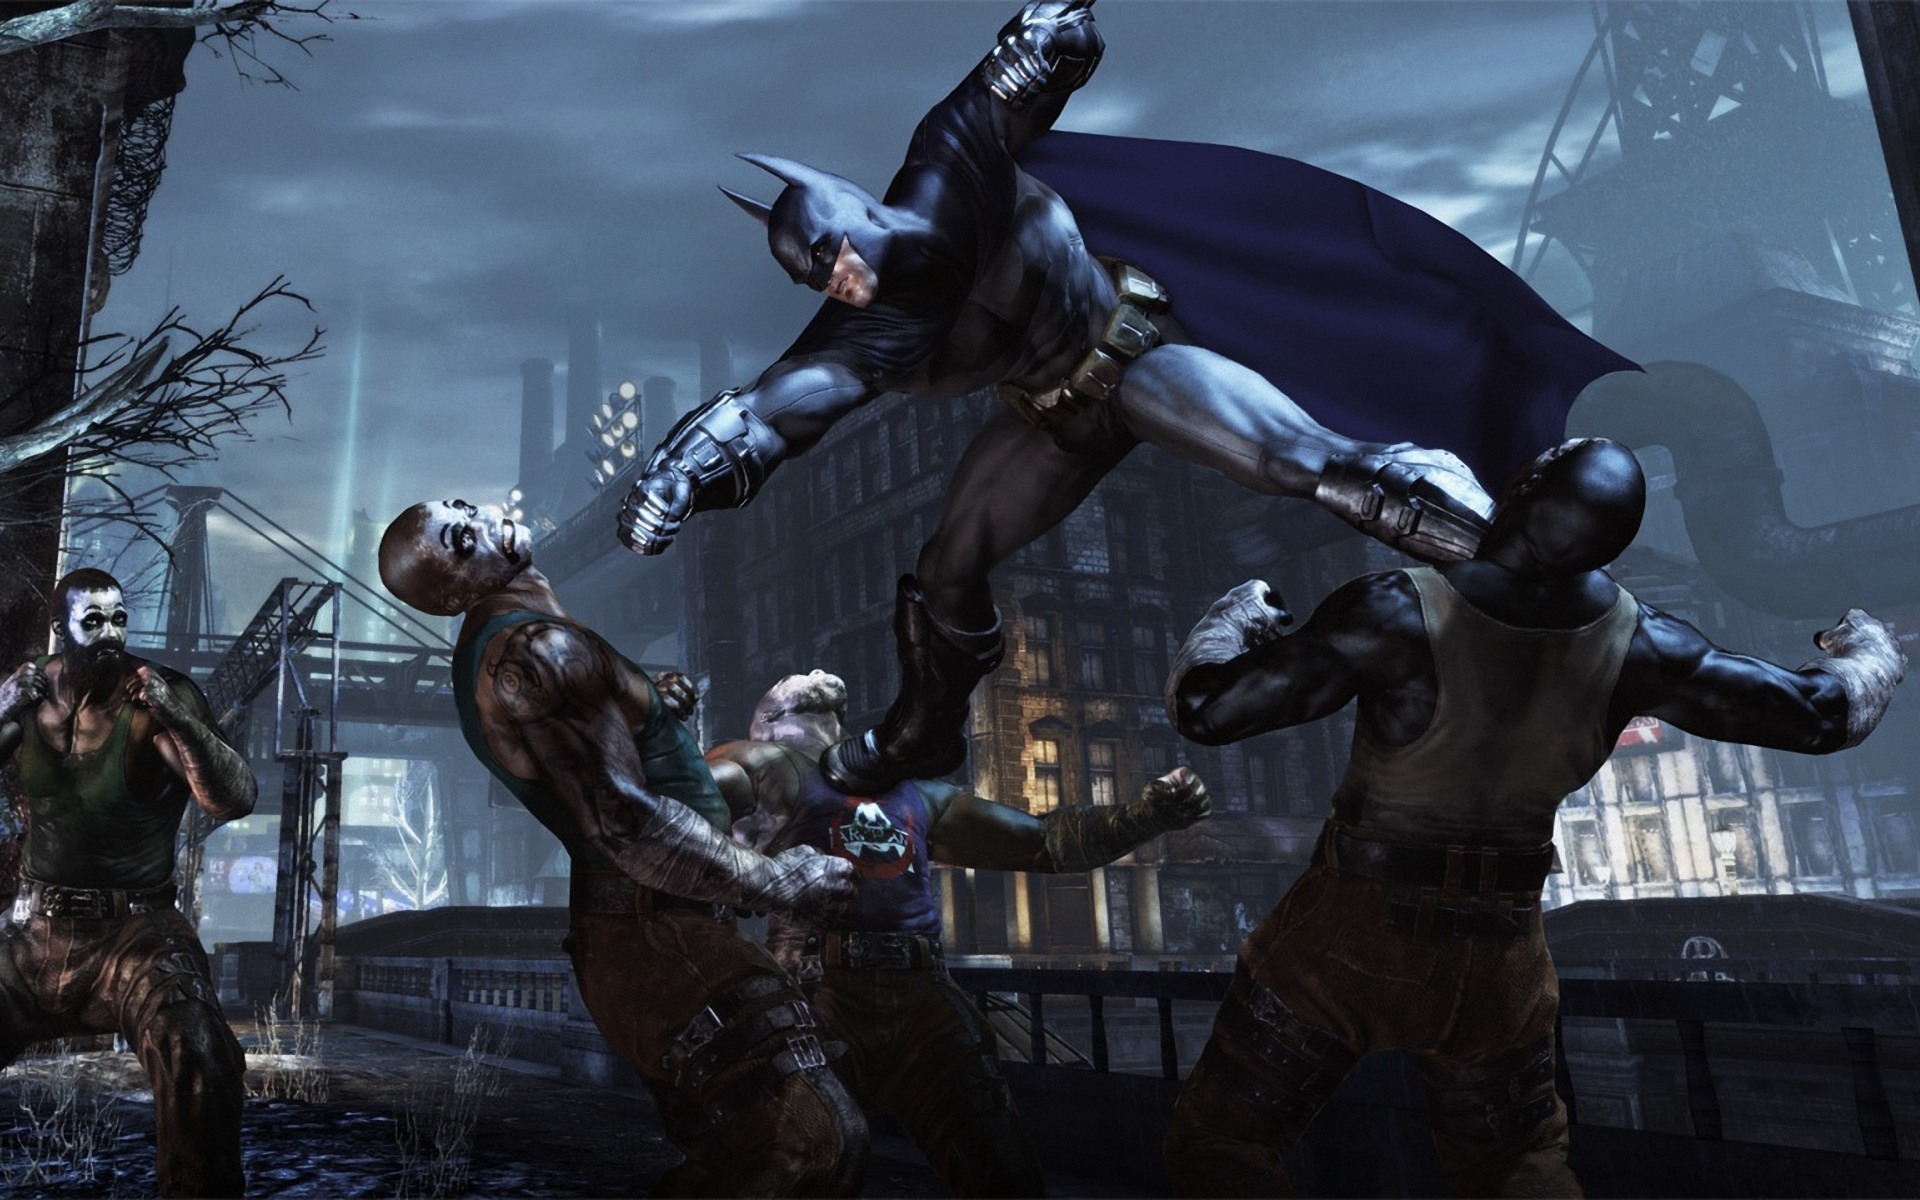 Dark Knight Batman Fighting - HD Wallpaper 